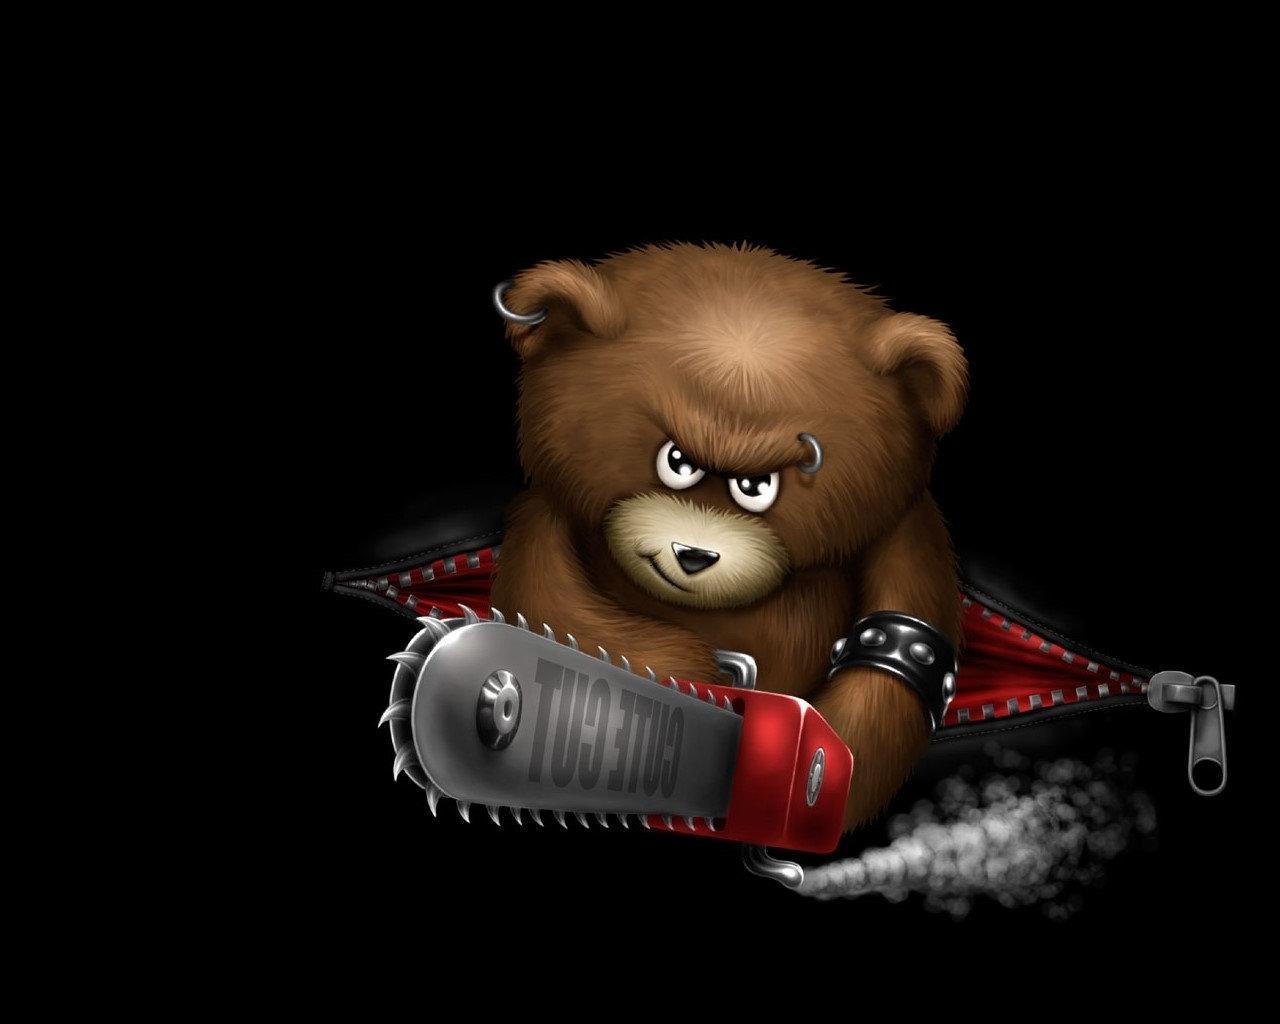 3d обои Крутой медведь металлист с пирсингом и бензопилой смотрит угрожающим взглядом (Cute cut)  милитари # 53430